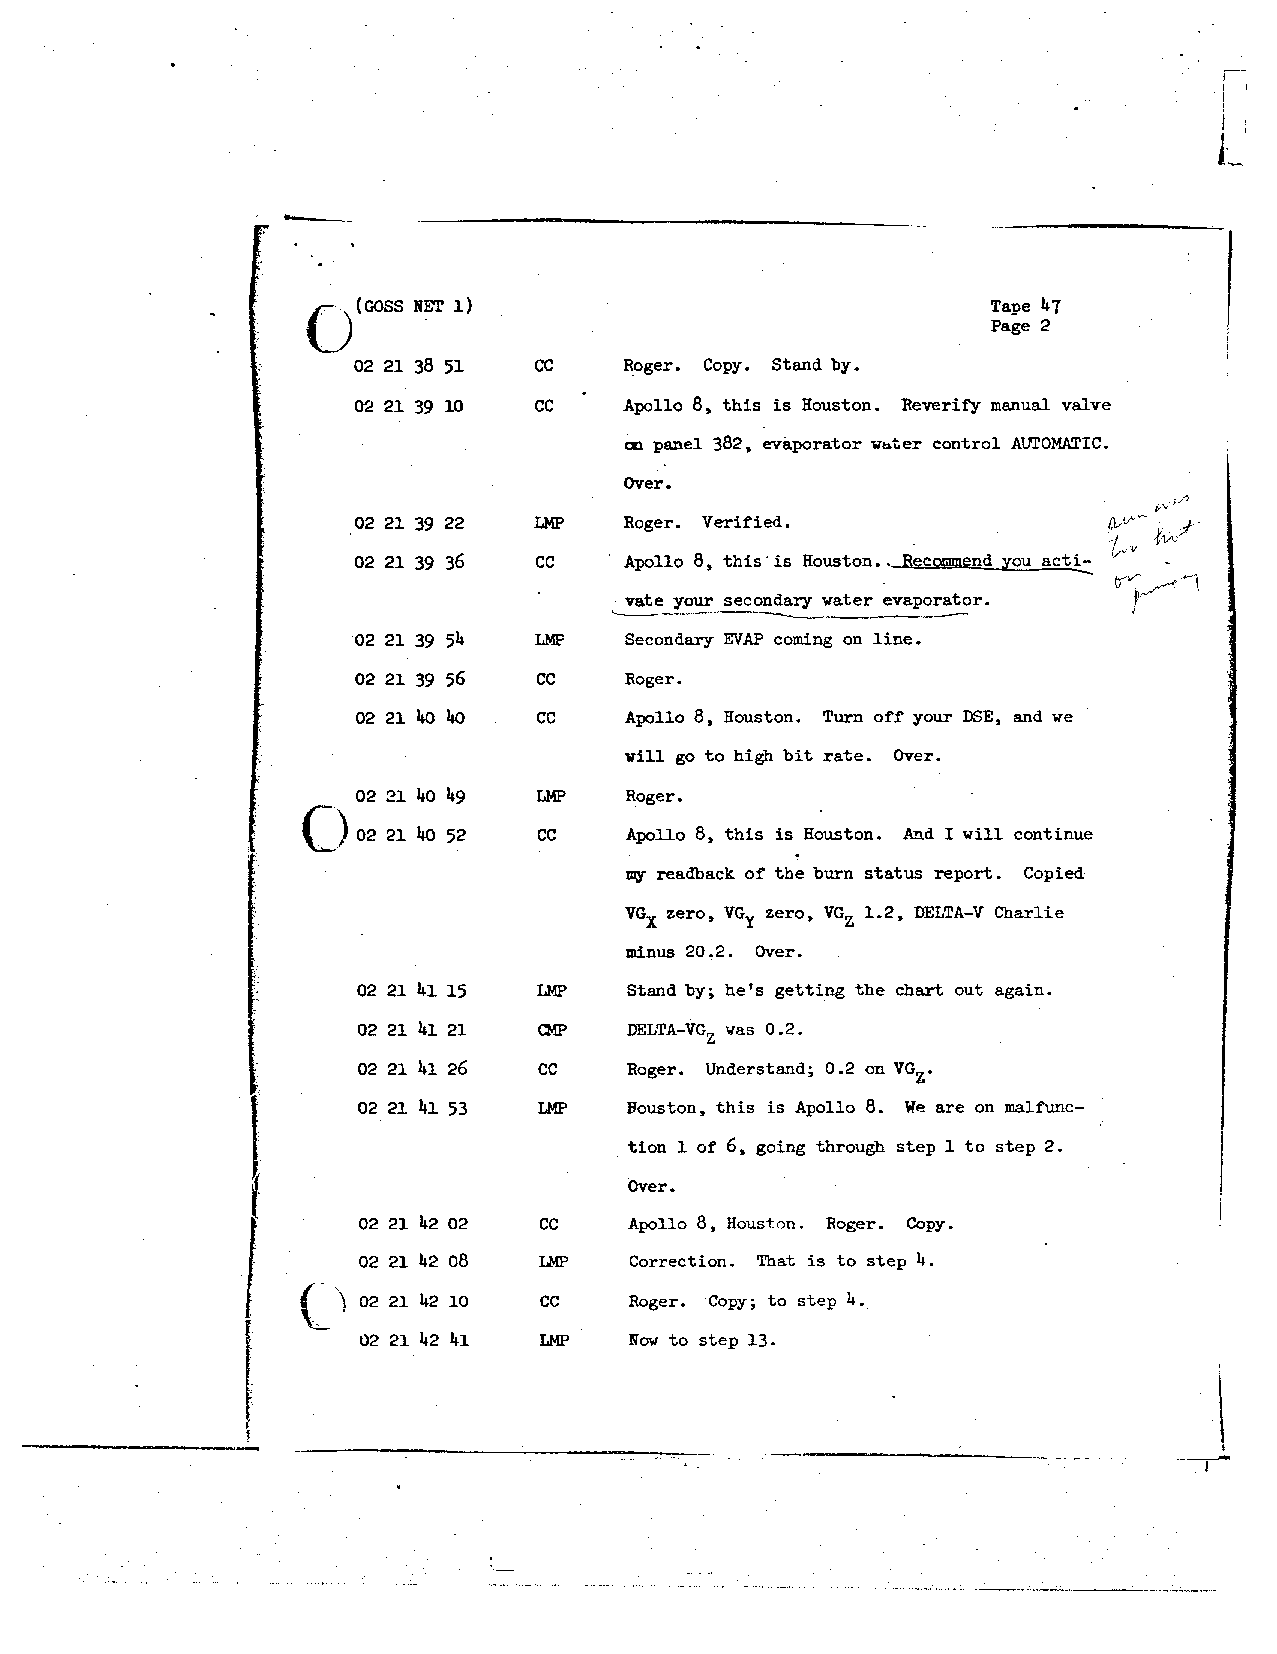 Page 359 of Apollo 8’s original transcript